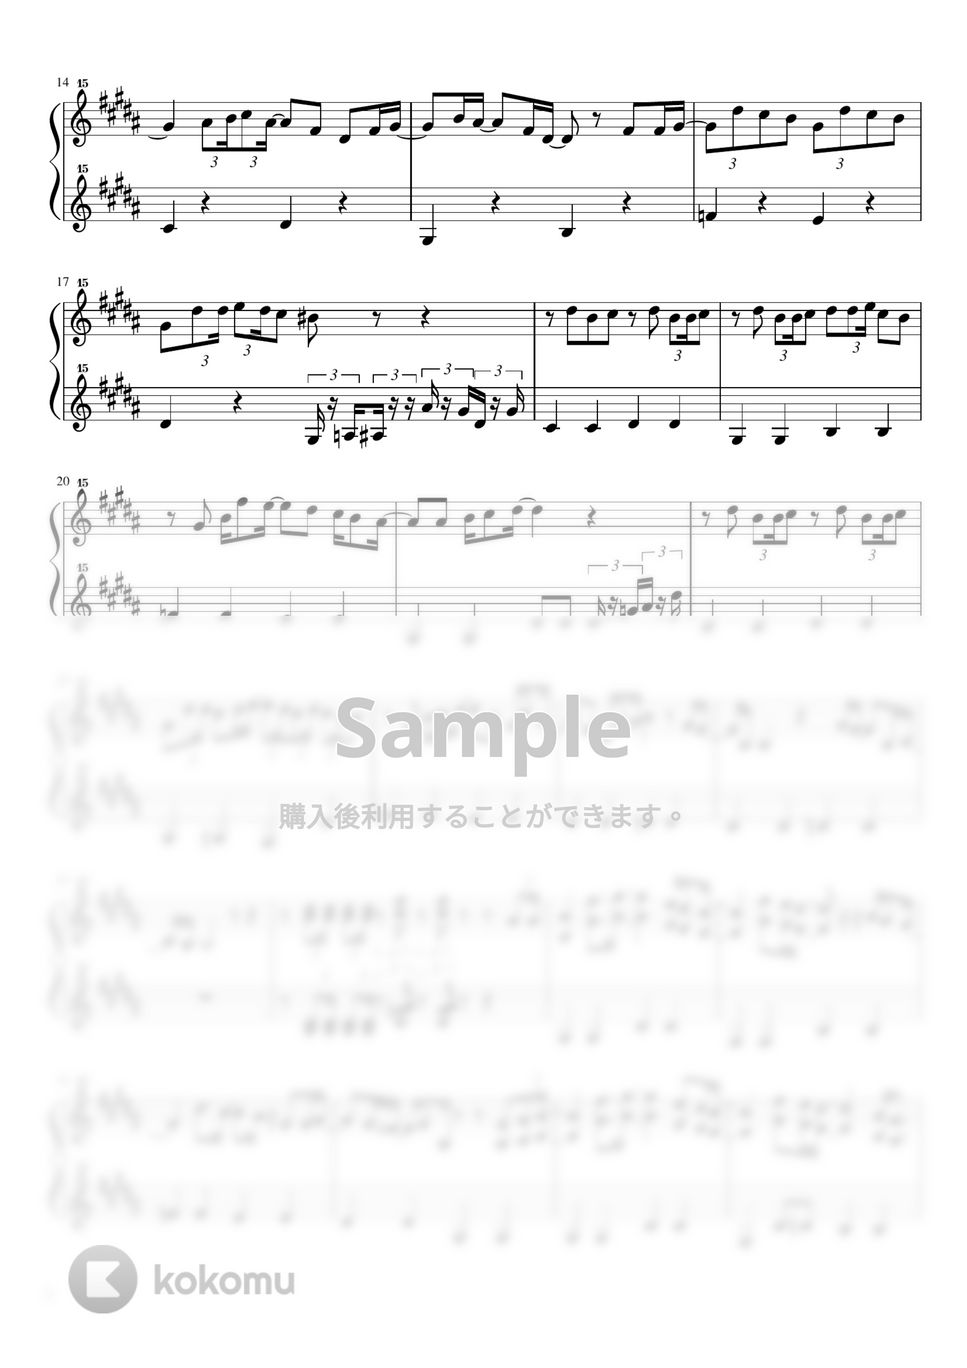 米津玄師 - 感電 (トイピアノ / 32鍵盤 / J-POP) by 川西三裕